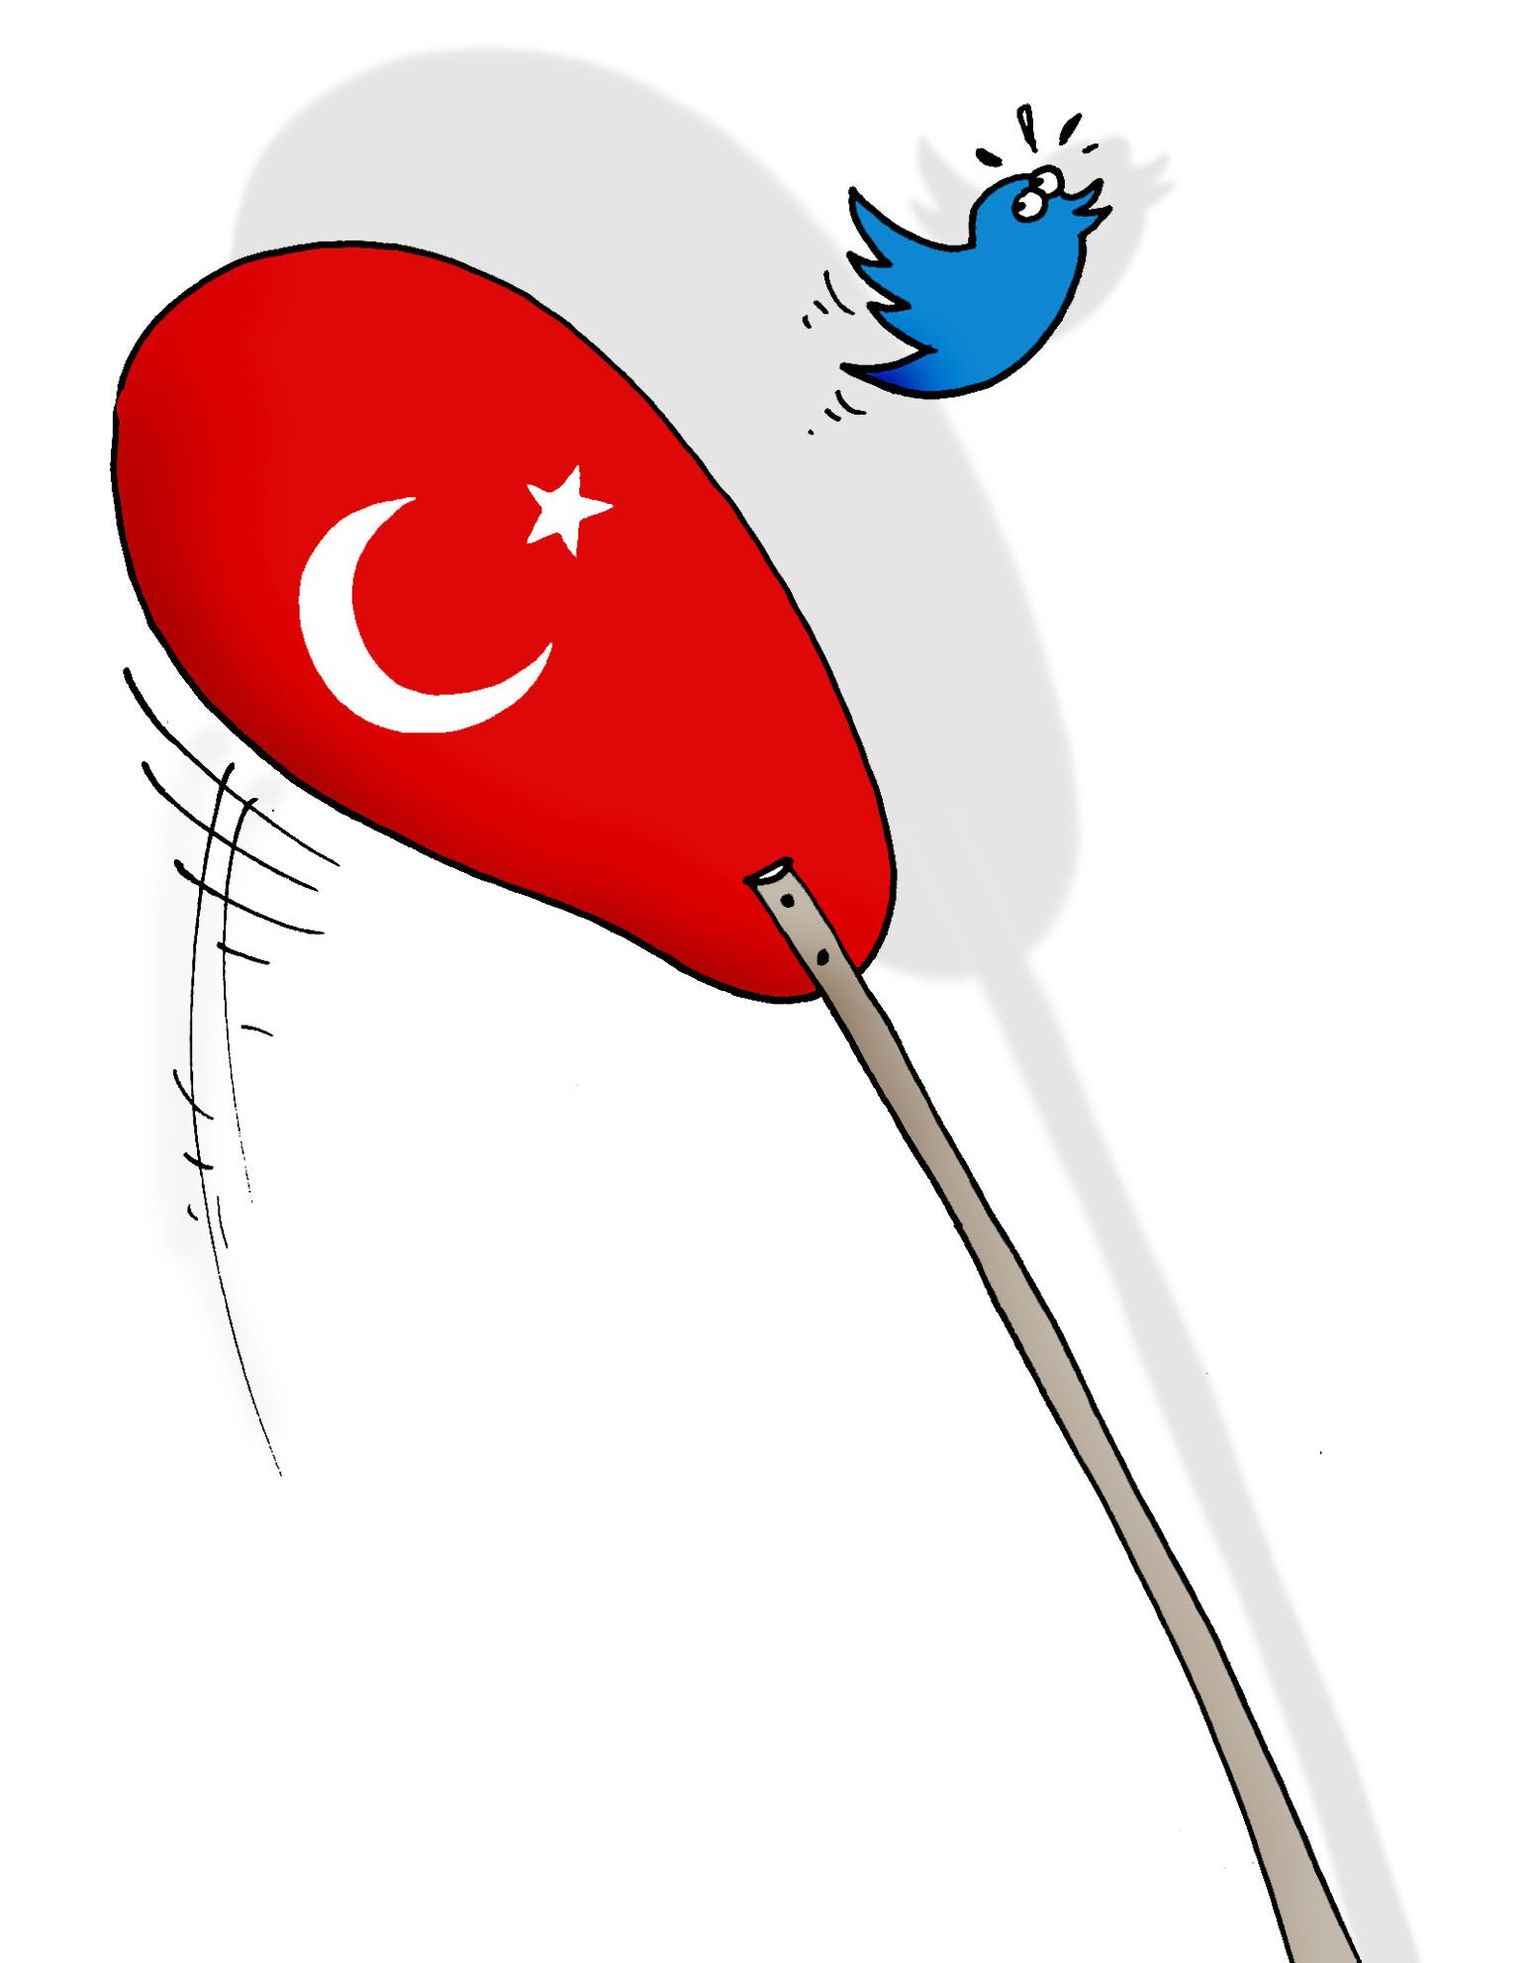 Türgis keelati sotsiaalvõrgustik Twitter.